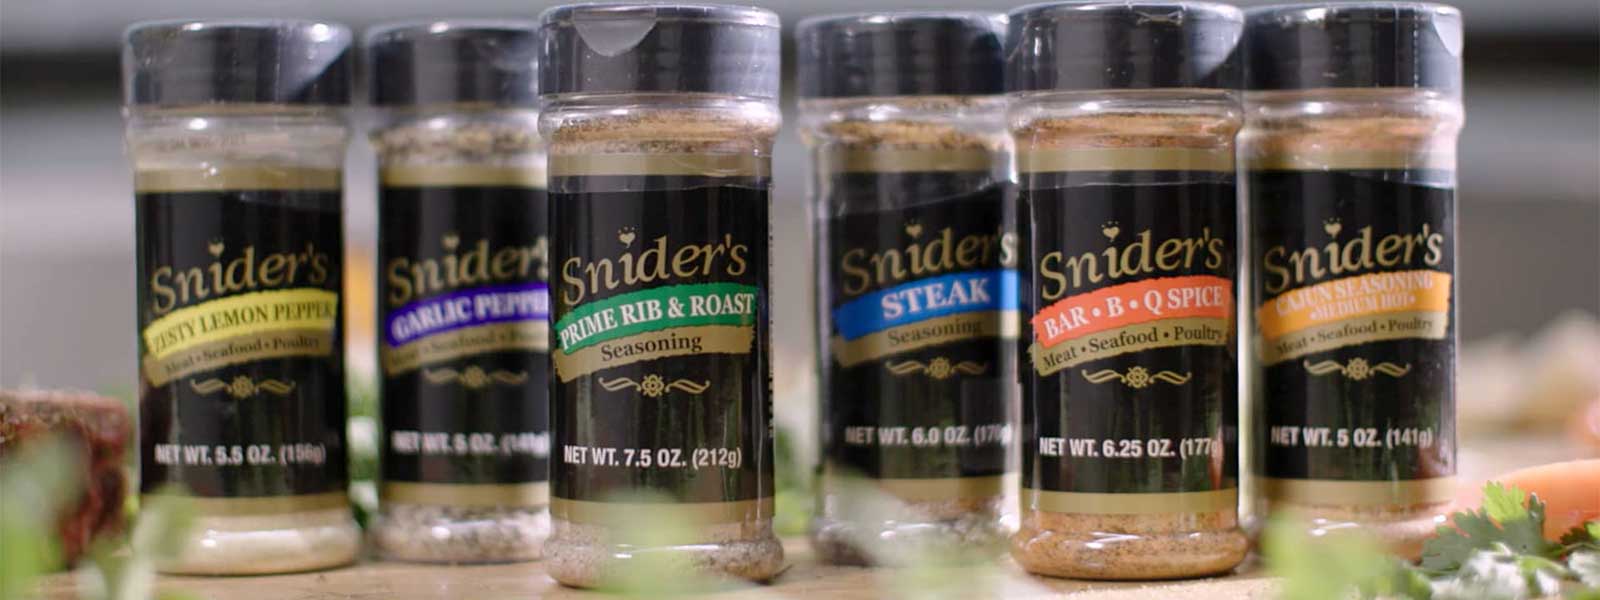 Sniders Seasoning Shaker Lineup